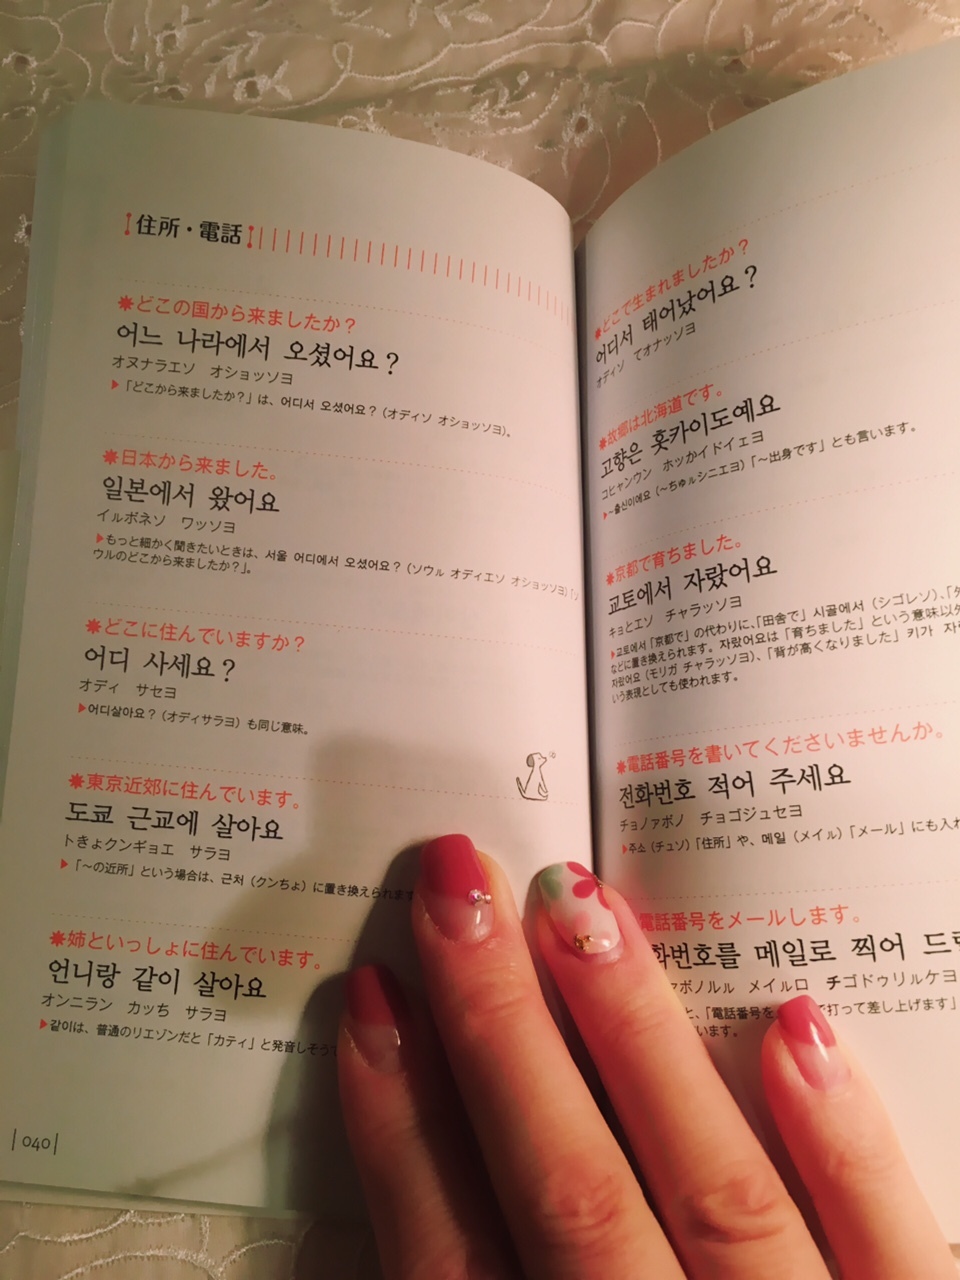 お風呂でも勉強できちゃう本 お風呂で読む韓国語 会話フレーズ くちびるにトウガラシ